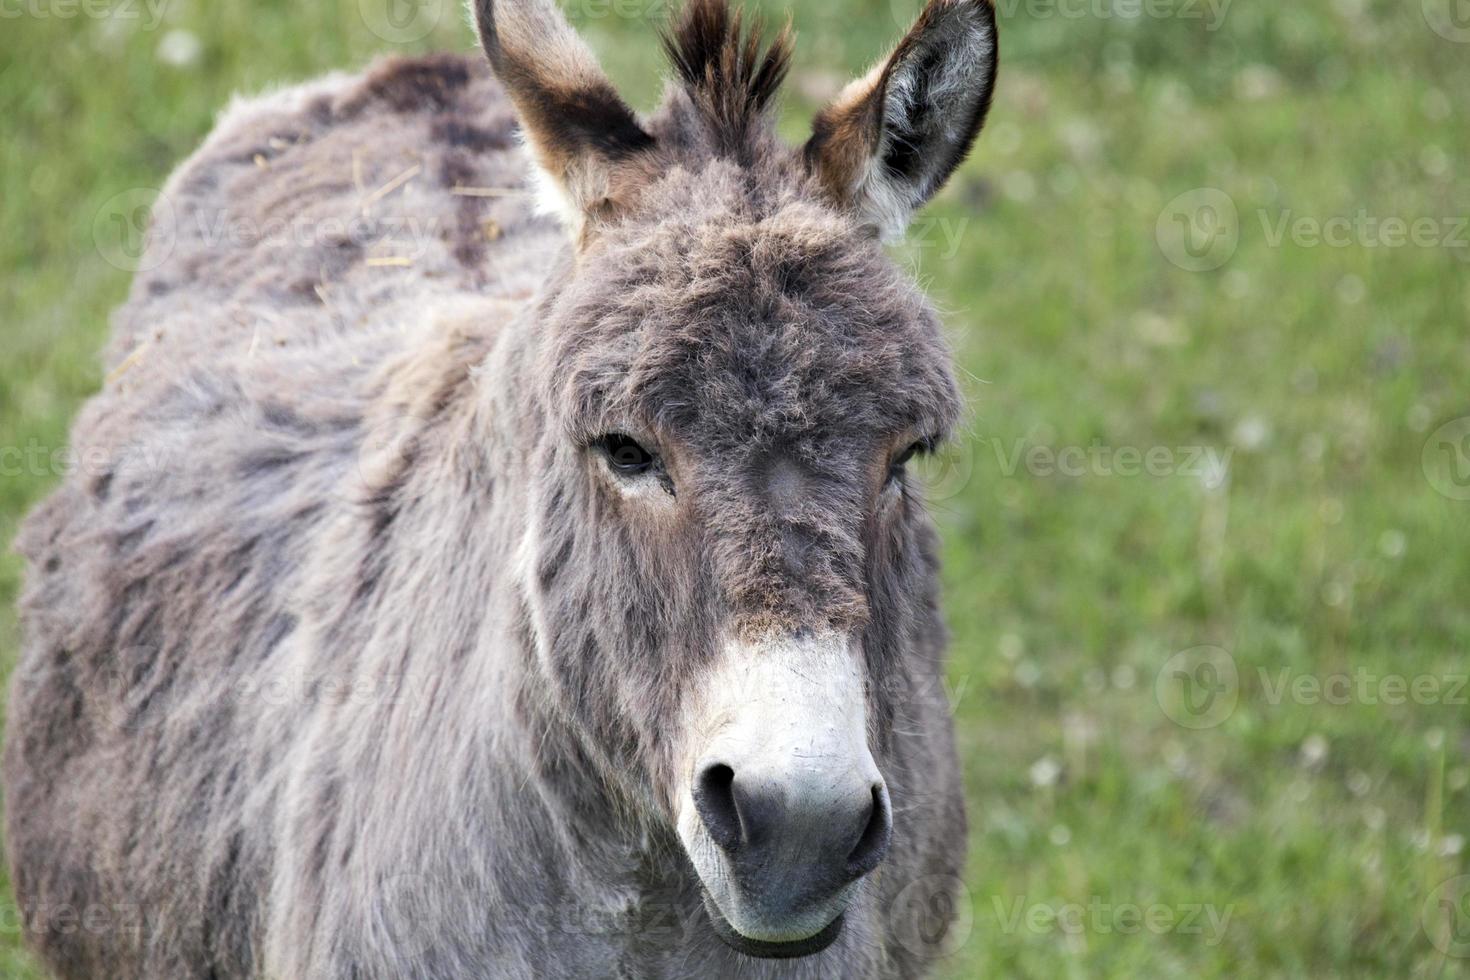 Donkey close up photo